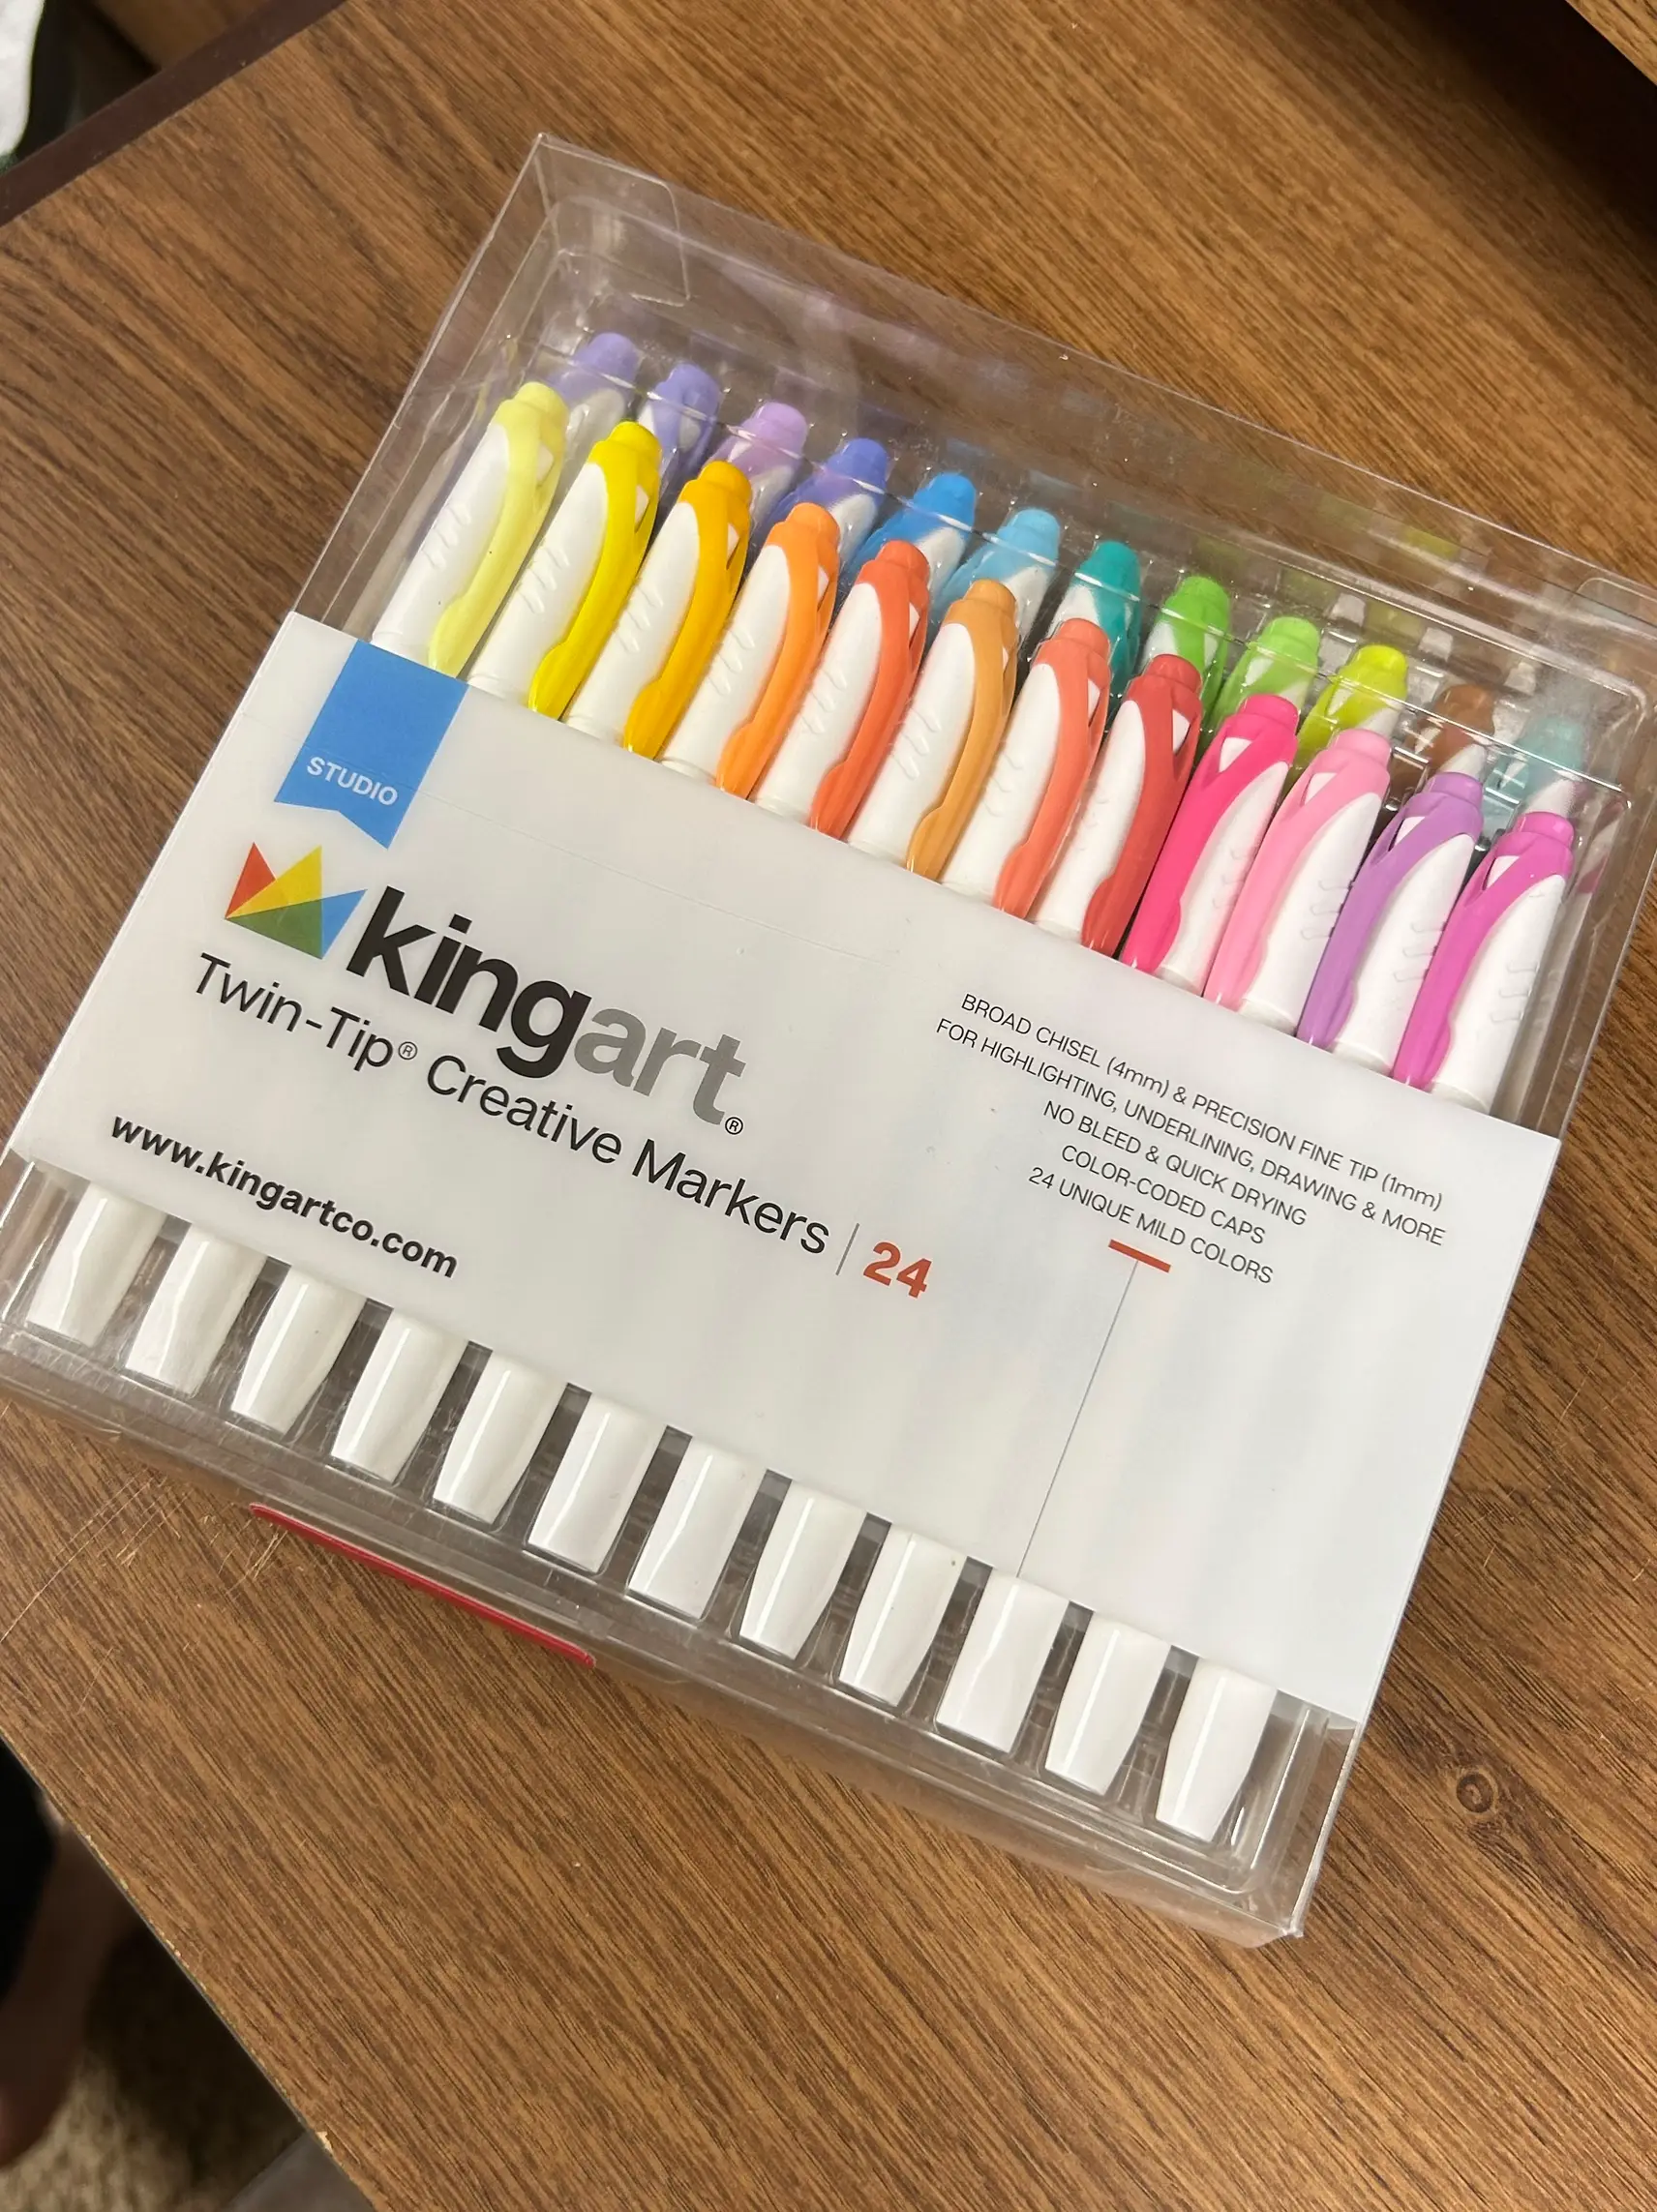 KINGART Studio Felt Tip Pens, Set of 24, Multicolored